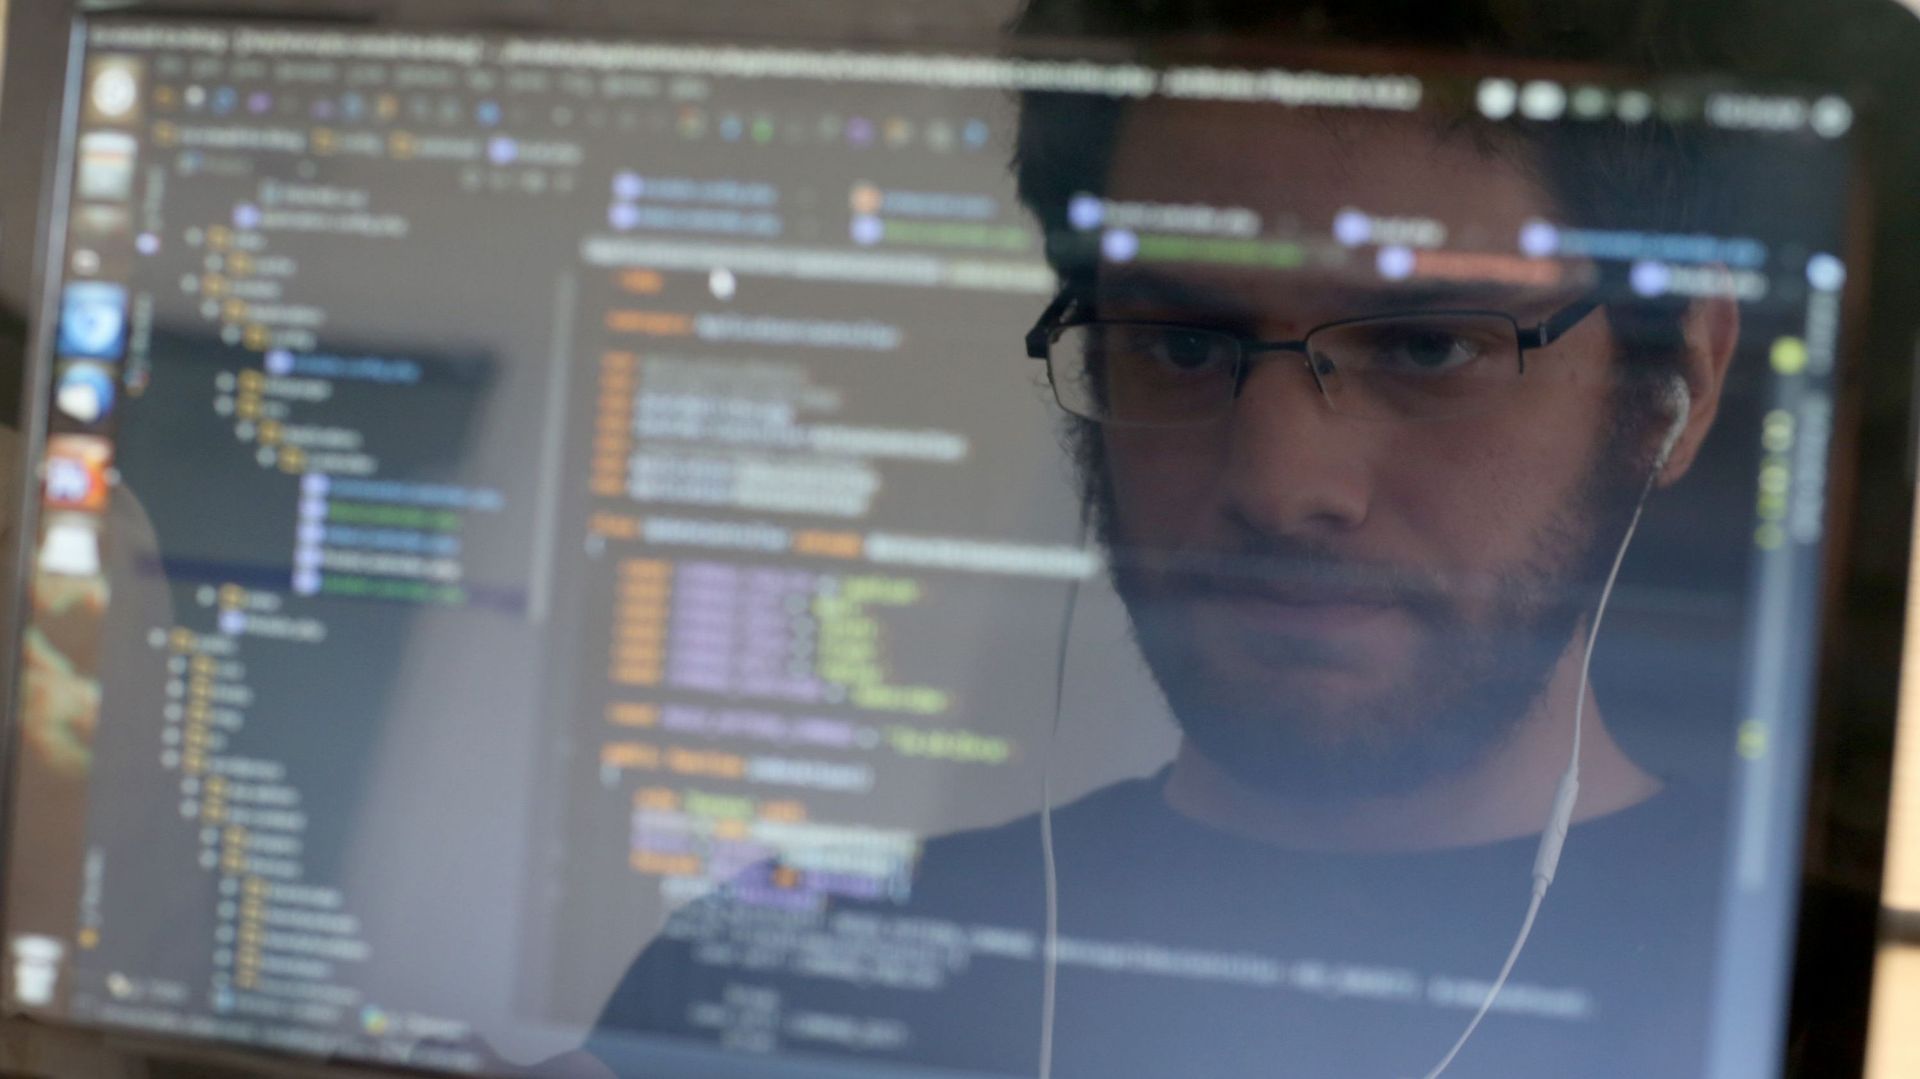 Soixante jeunes chercheurs d'emploi bruxellois apprennent à coder